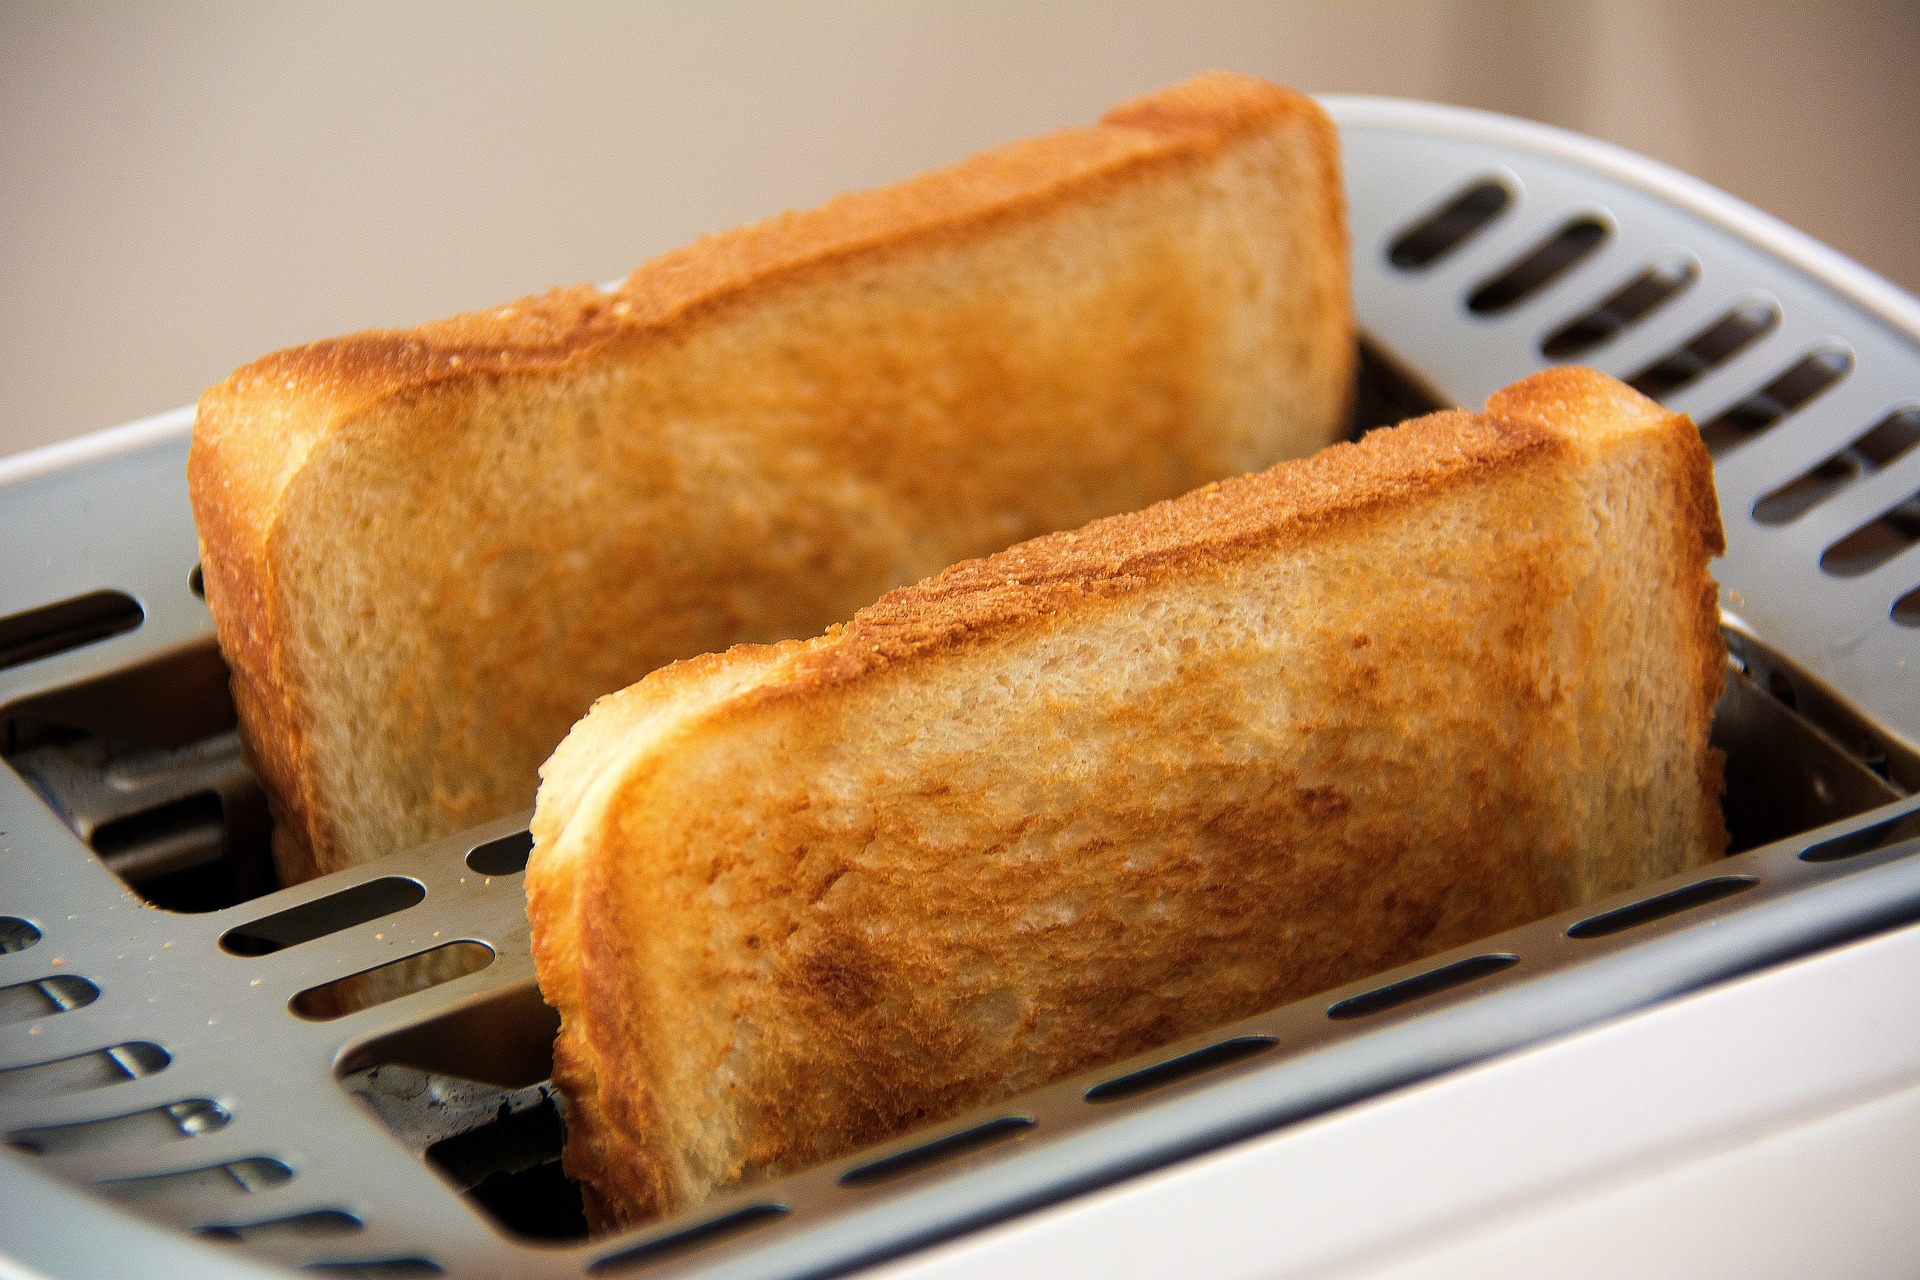 Pane tostato e pane fresco: quali sono le differenze? - Studio NewLife  Nutrizione e Salute